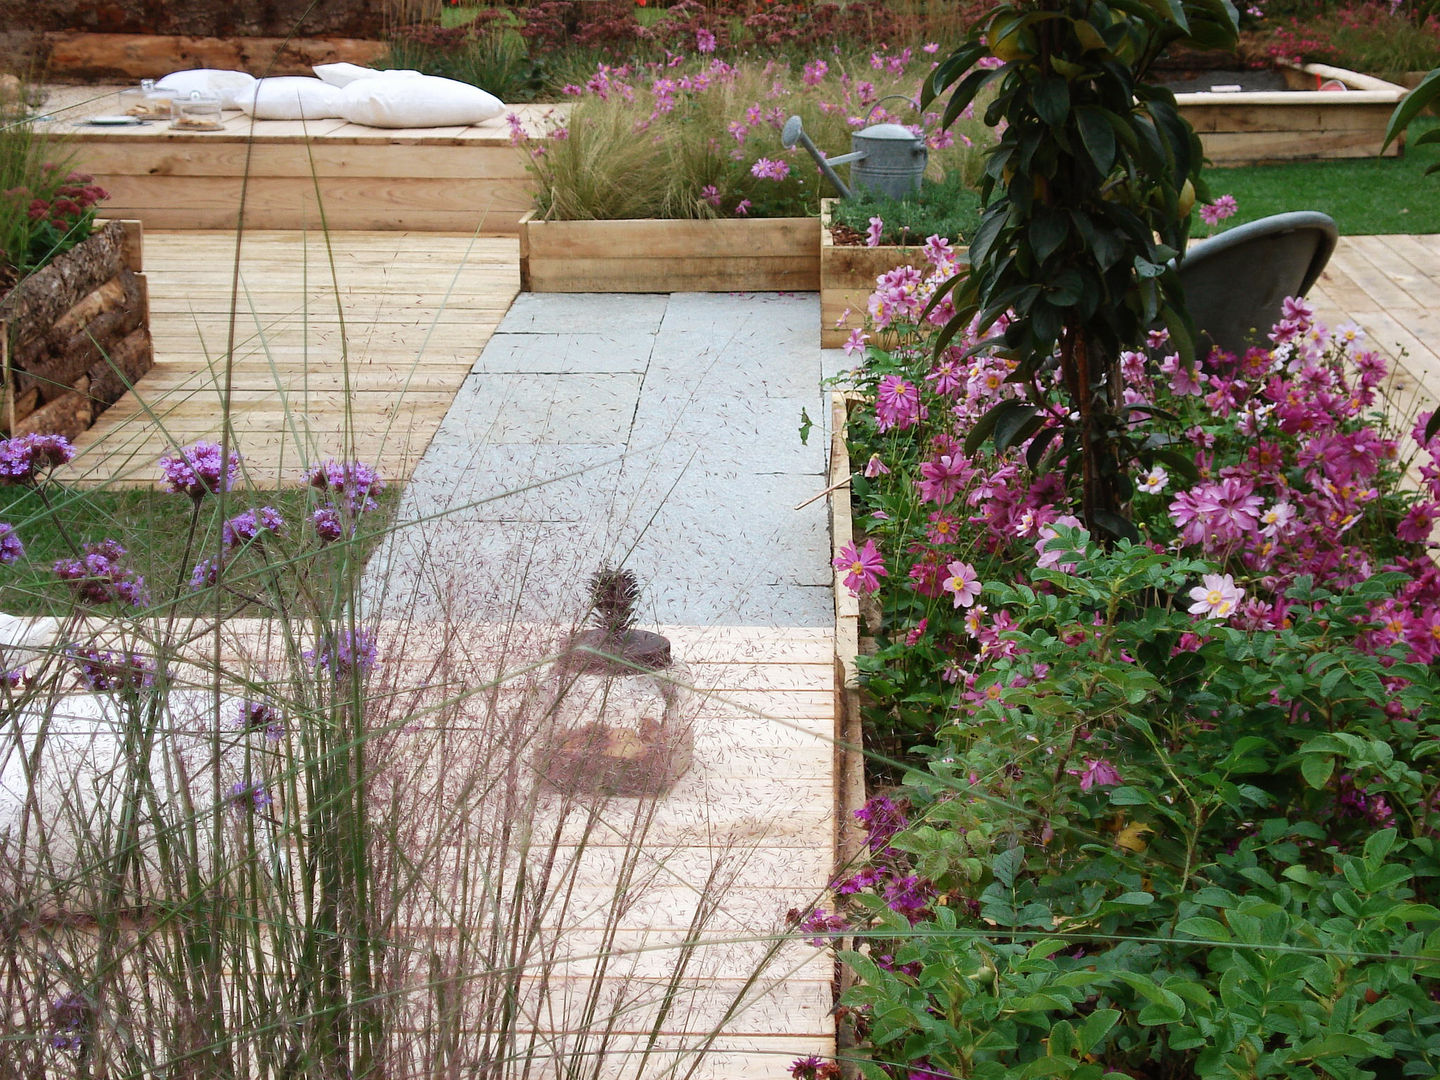 'Tutti giù per terra', Barbara Negretti - Garden design - Barbara Negretti - Garden design - Jardines